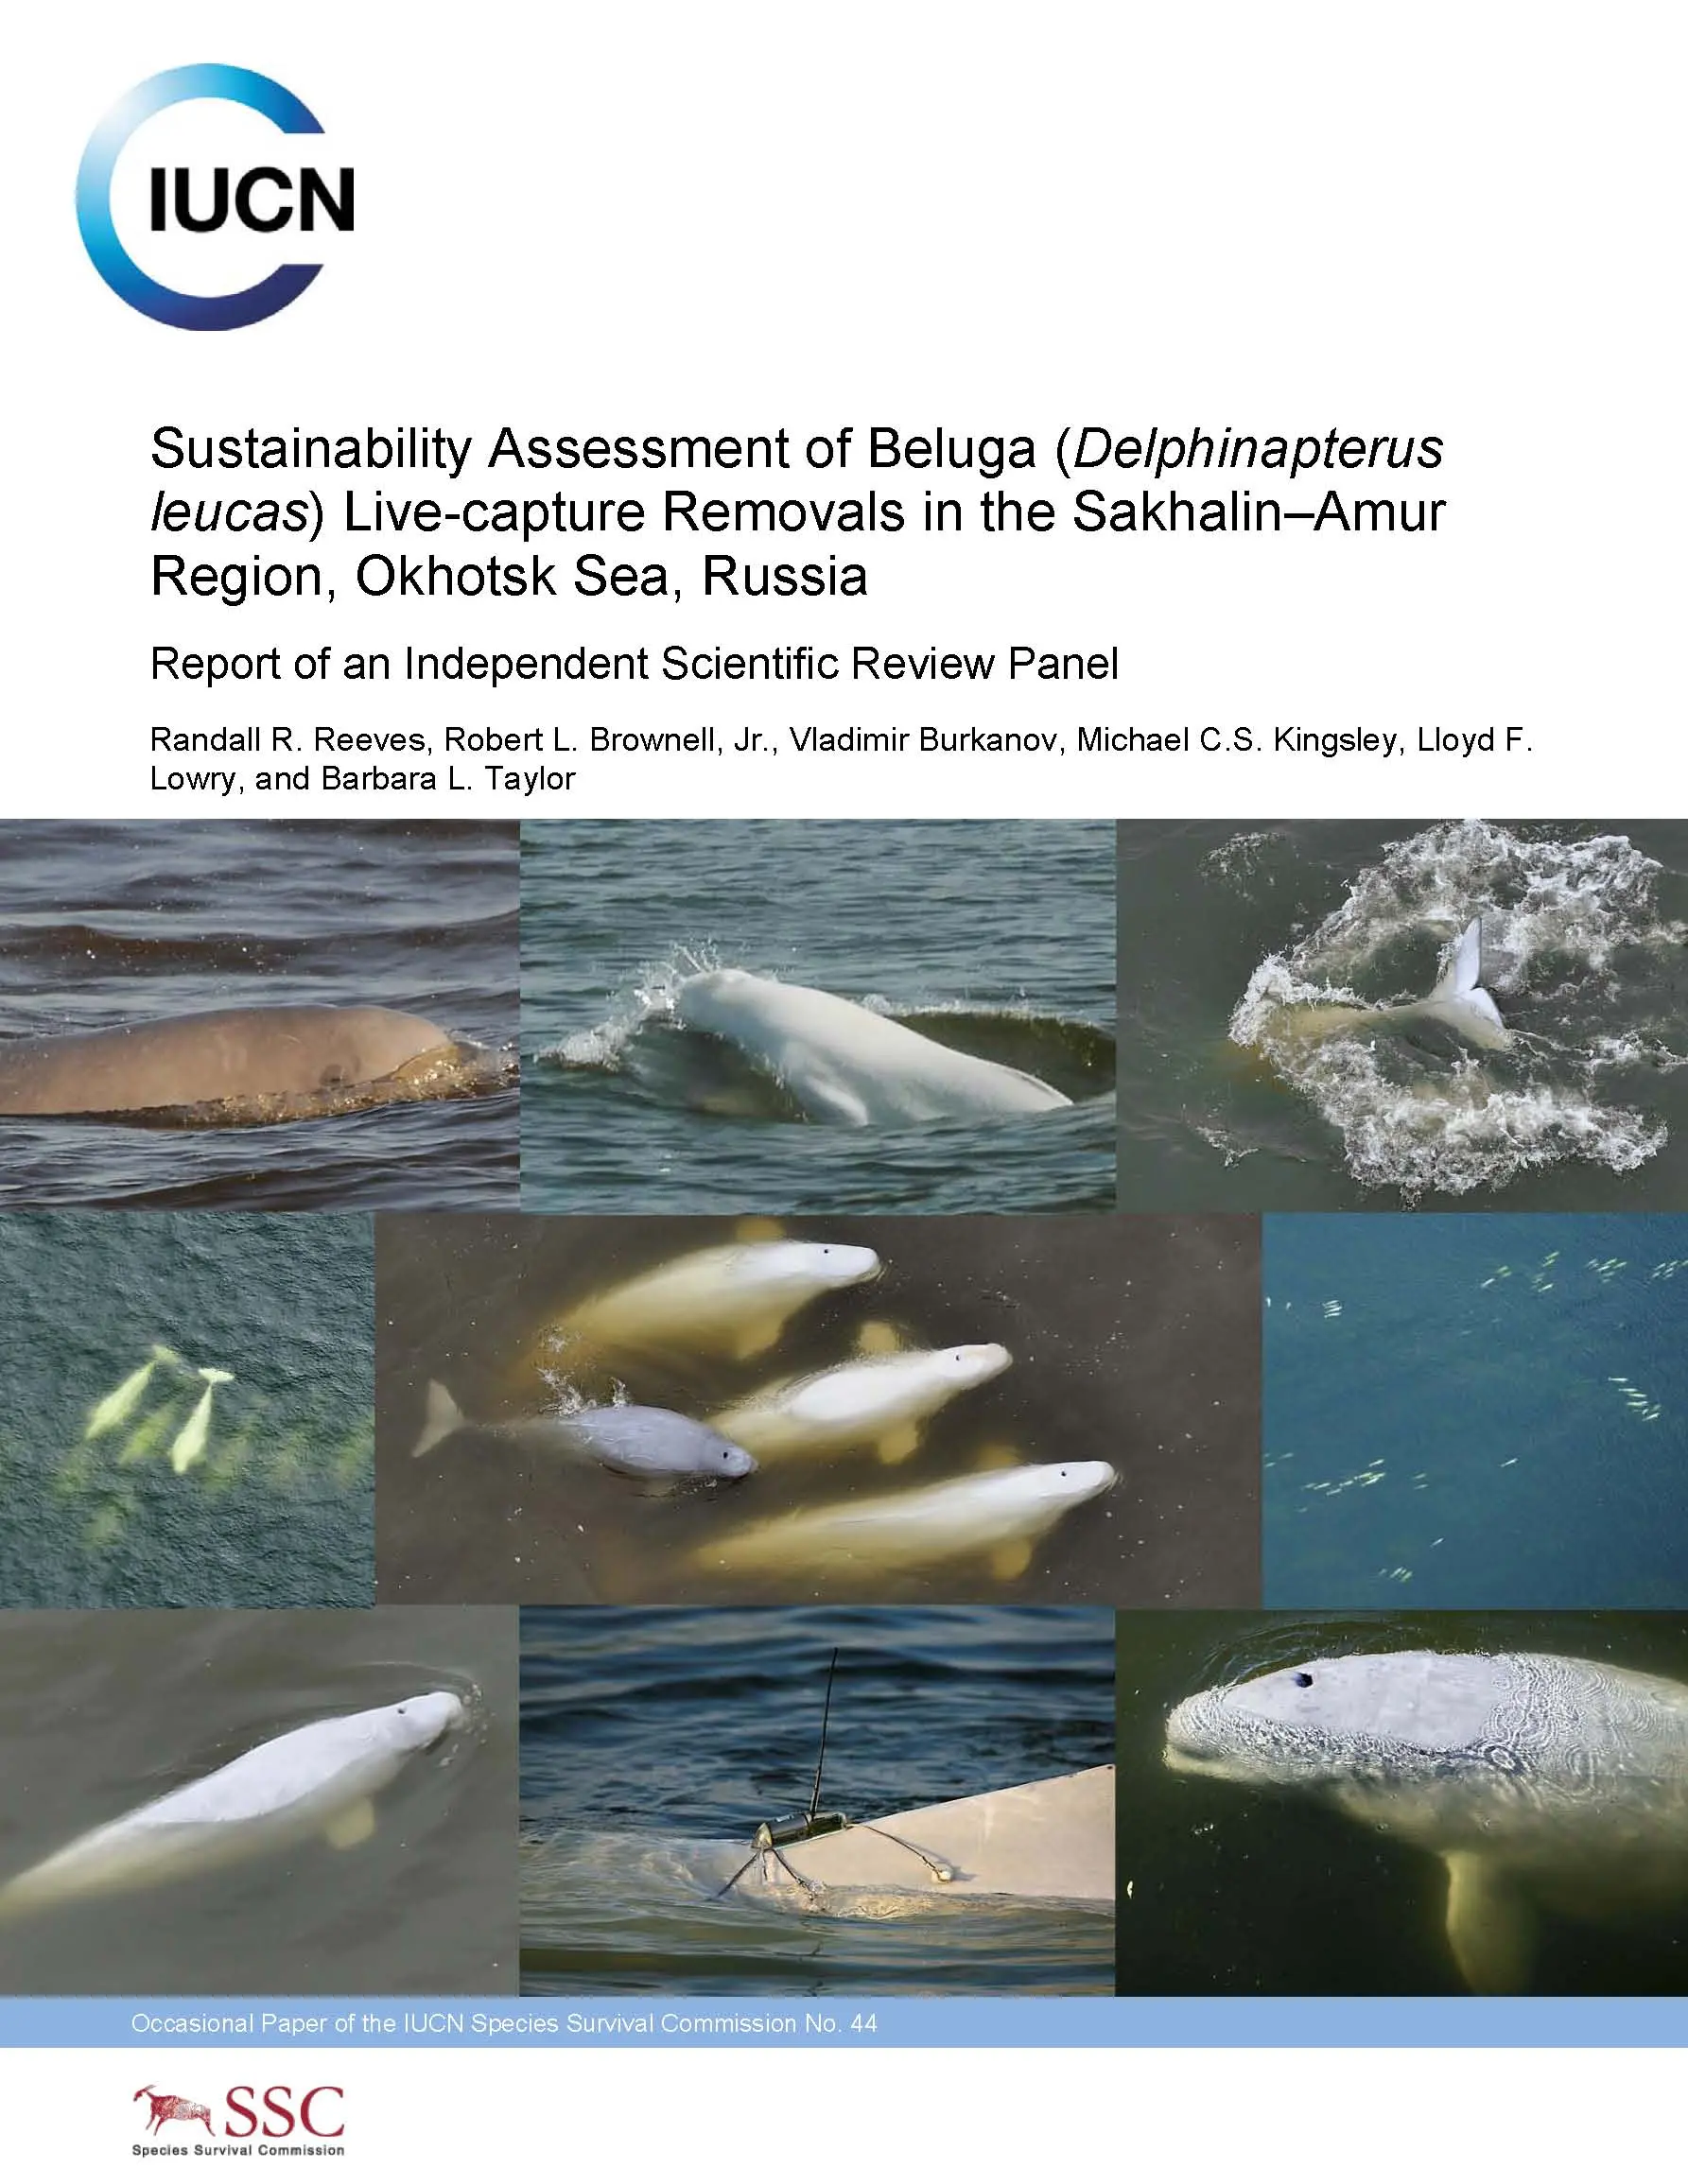 Beluga Report Front Cover